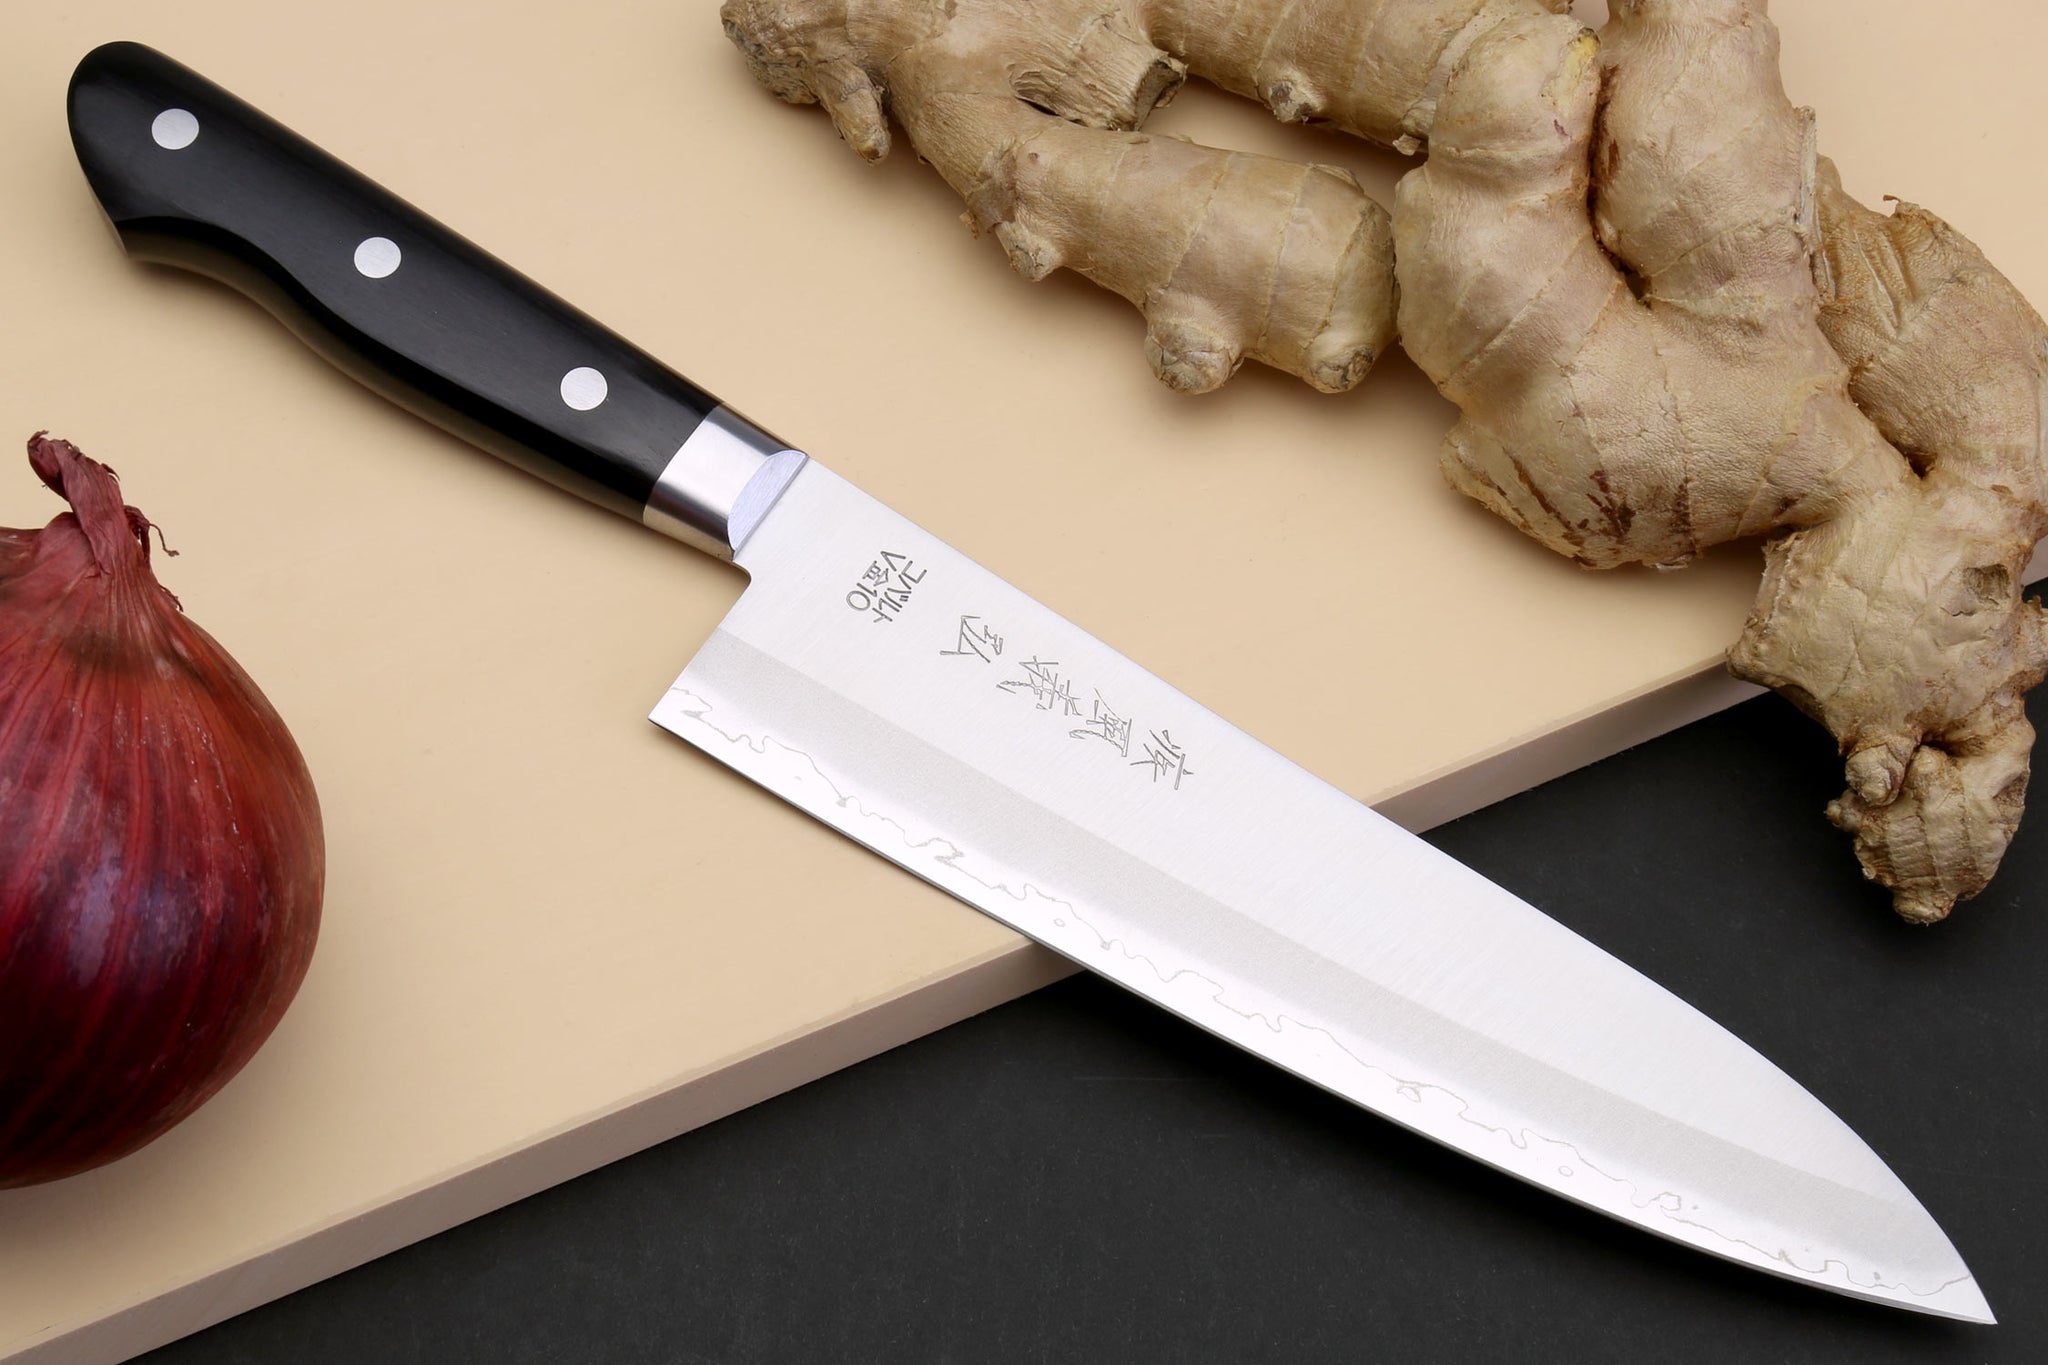 Chef's Kitchen Knives Santoku Knife Japanese Chef Knife VG-10